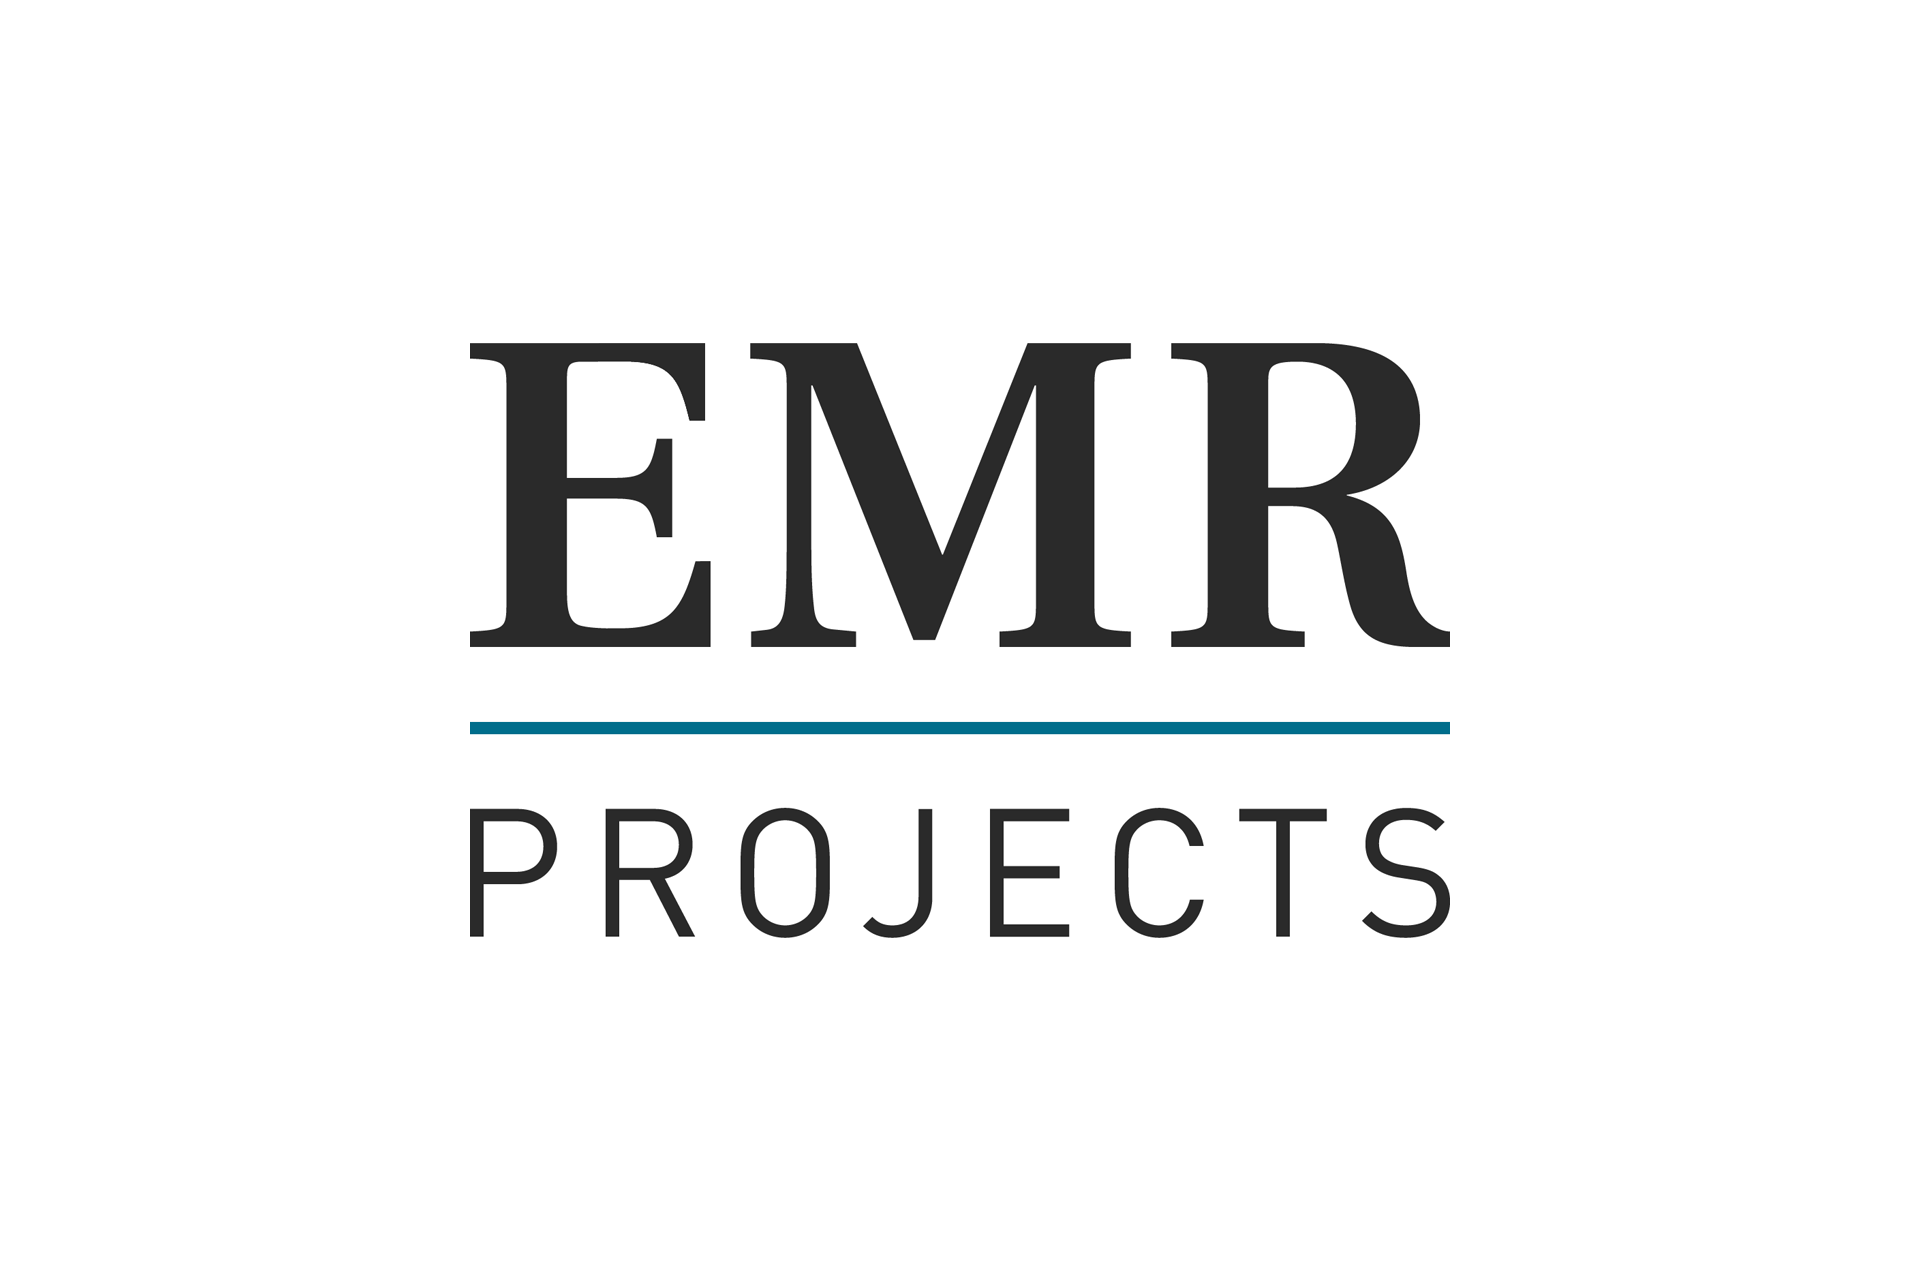 Emr logo letter design Royalty Free Vector Image